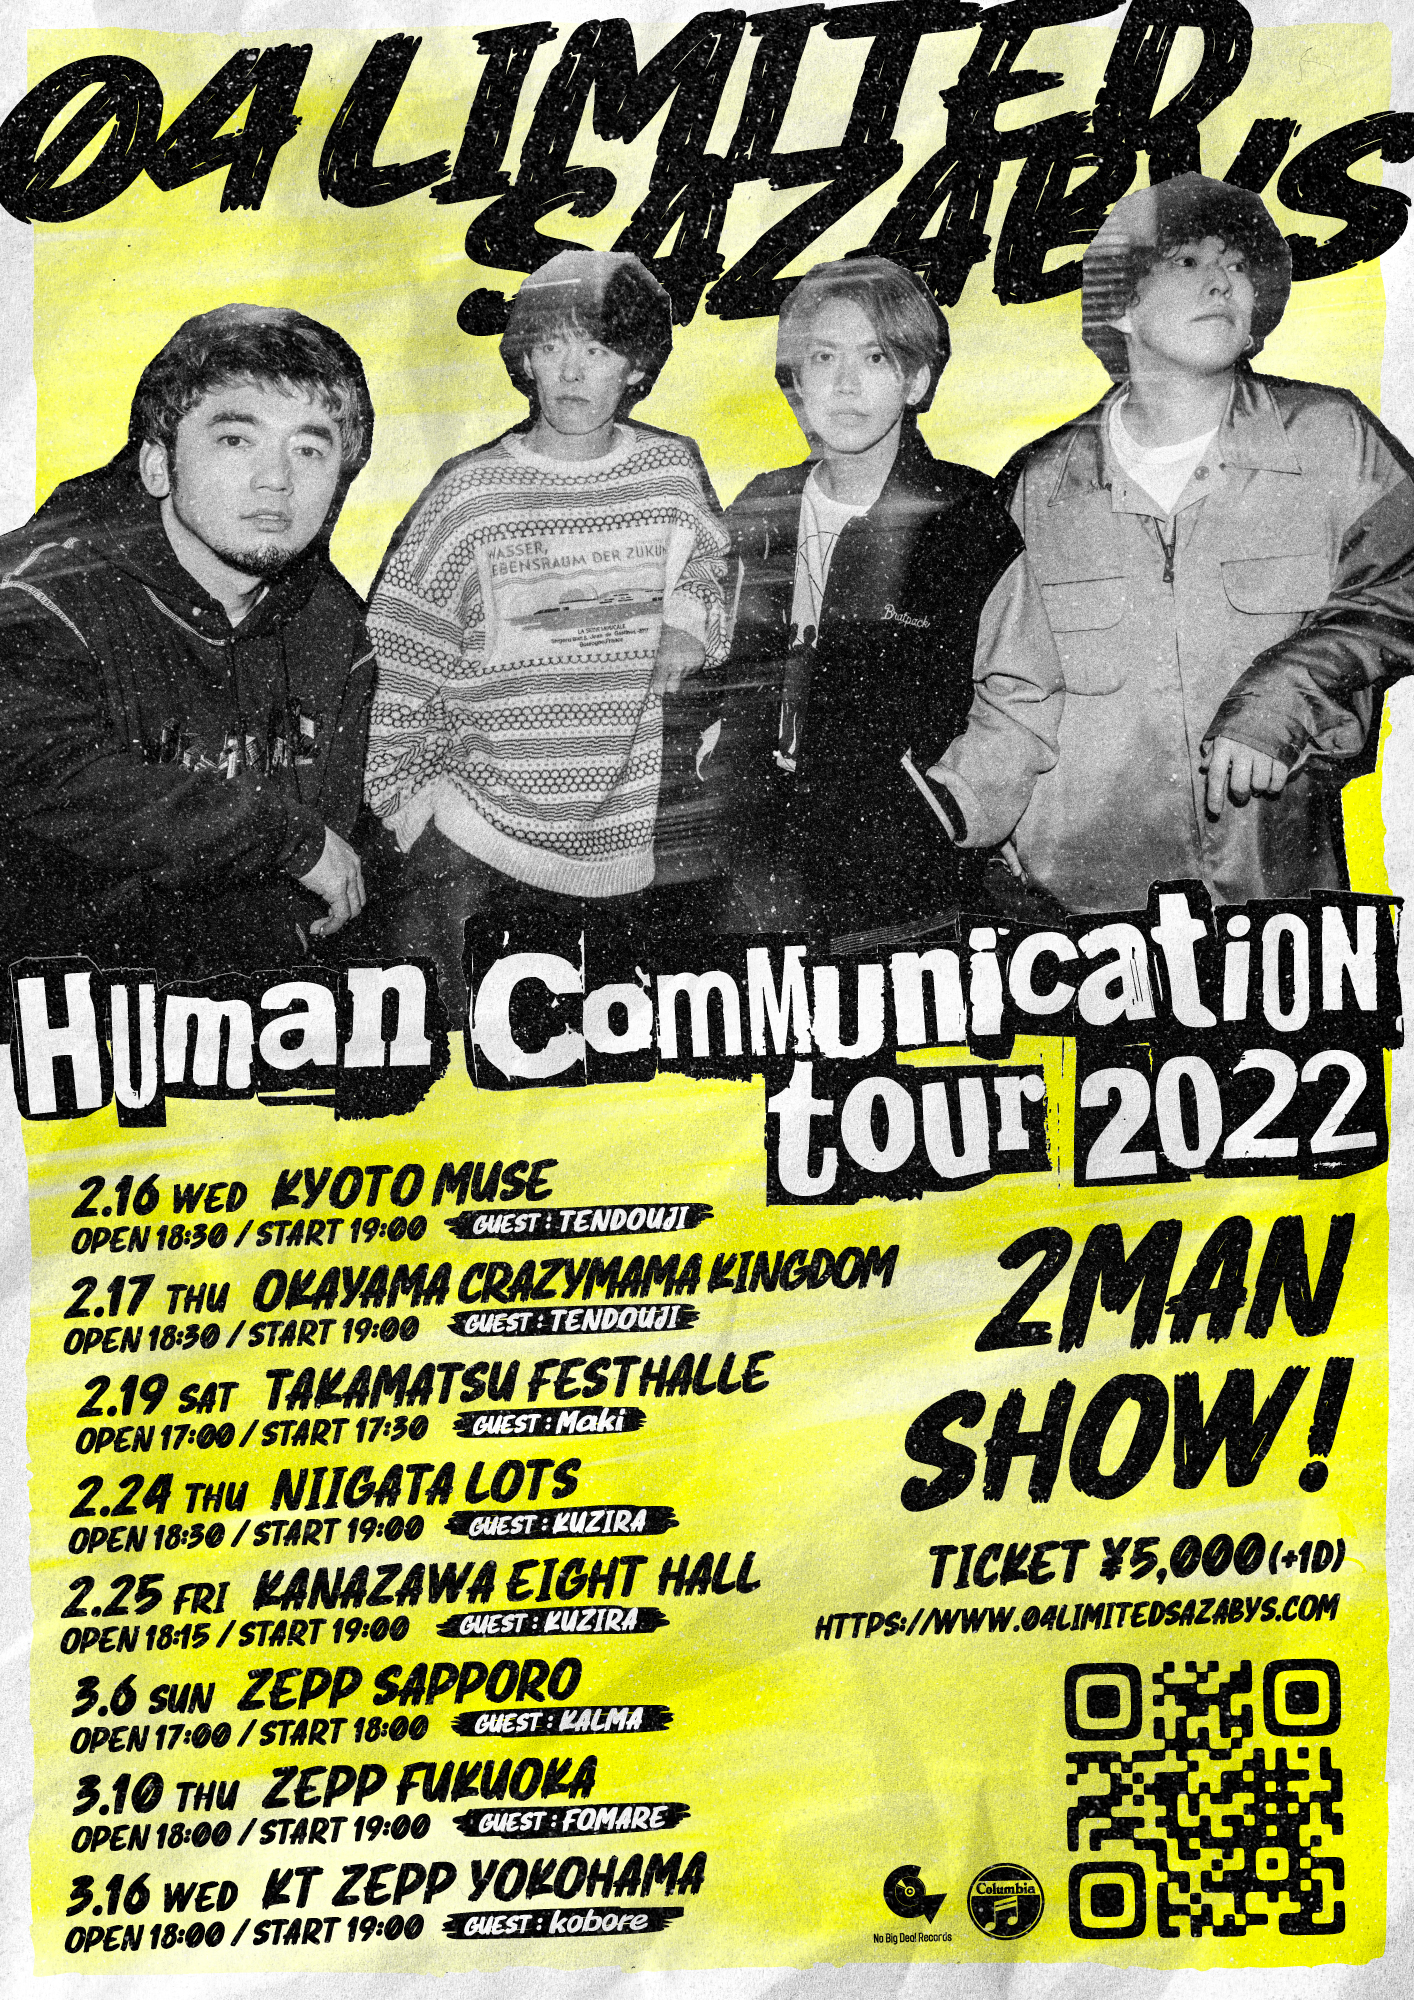 【岡山】Human Communication tour 2022 (岡山CRAZYMAMA KINGDOM)